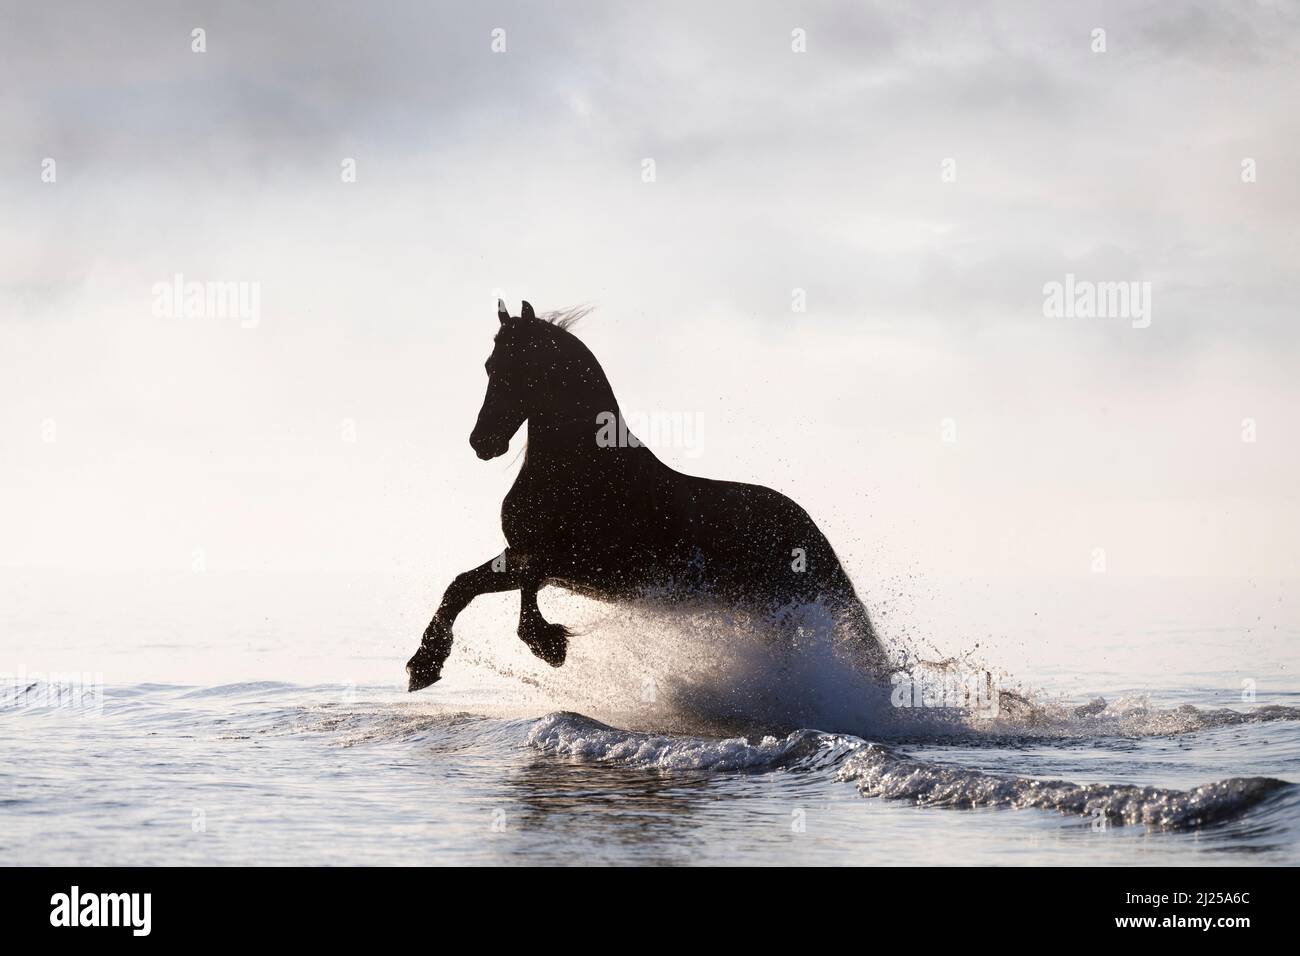 Cavallo Frisone. Stallone che galla nel mare, si staglia contro il cielo. Italia Foto Stock